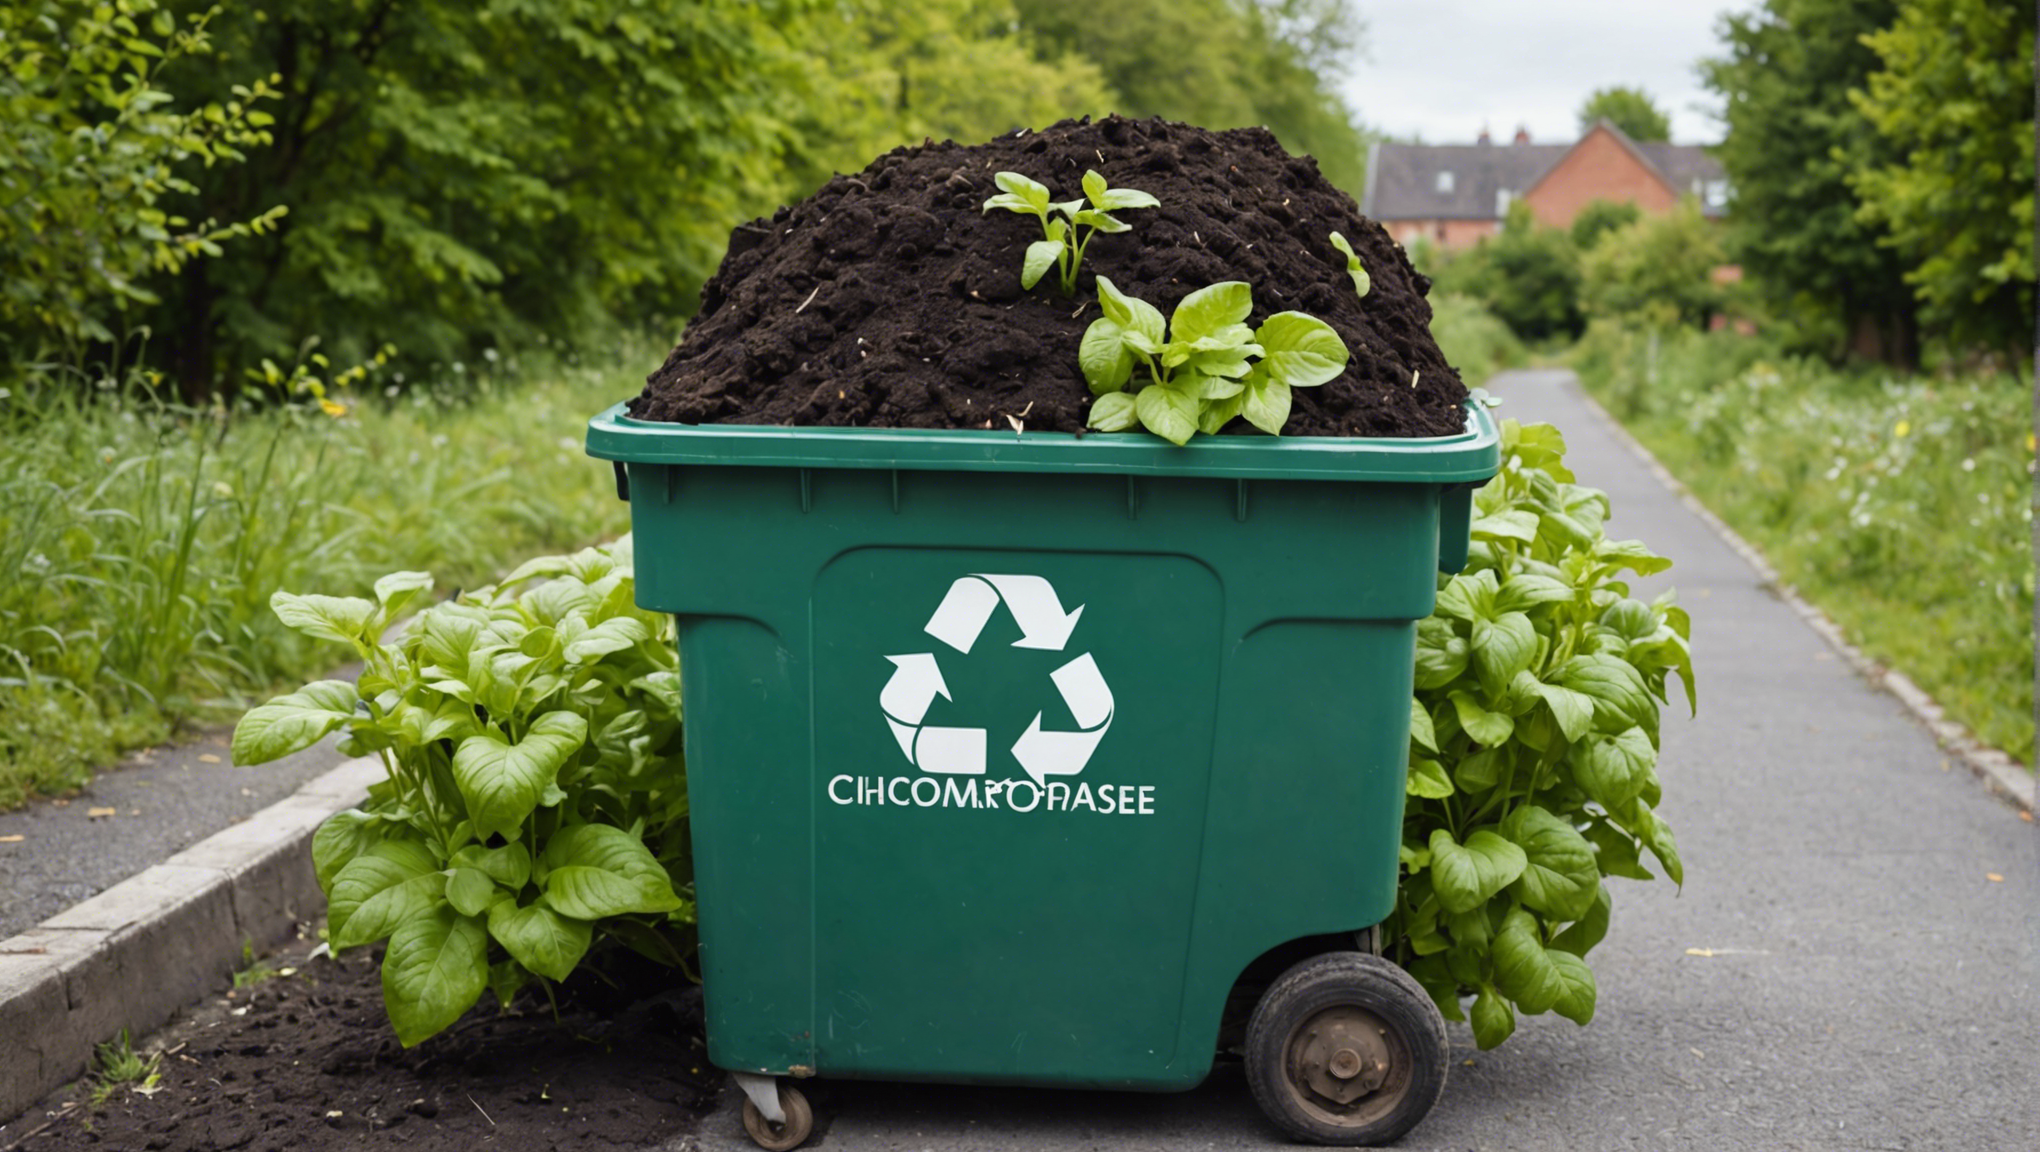 découvrez les 5 étapes faciles pour réussir votre méthode de compostage et réduire votre empreinte environnementale avec notre guide pratique.